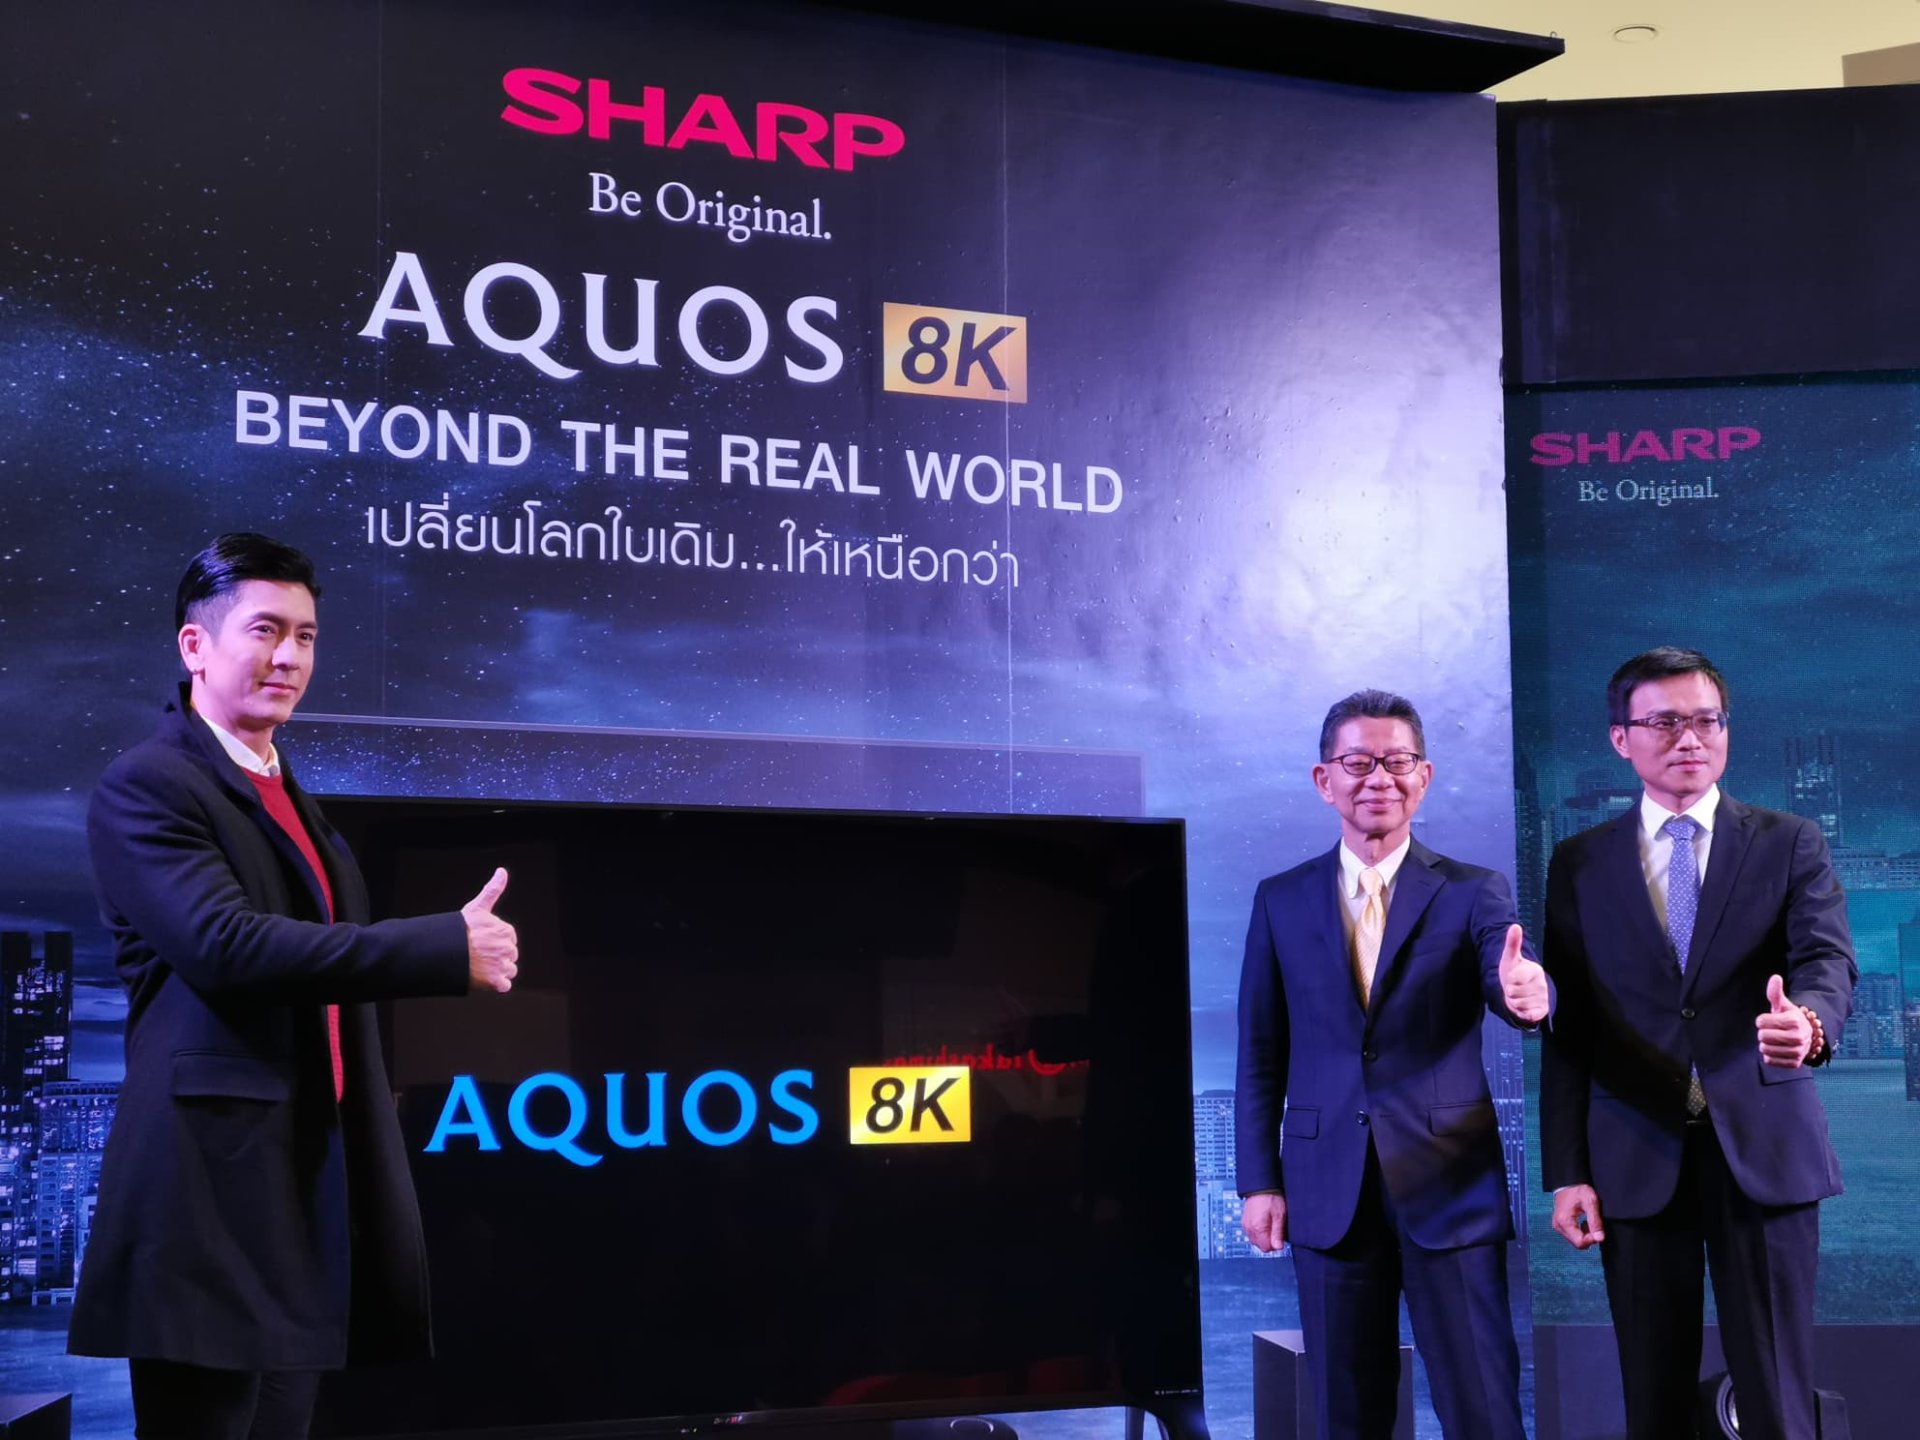 Sharp เปิดตัวทีวี AQUOS 8K พร้อมดึงหนุ่มหล่อคม ติ๊ก-เจษฎาภรณ์ เป็นแบรนด์ แอมบาสเดอร์!